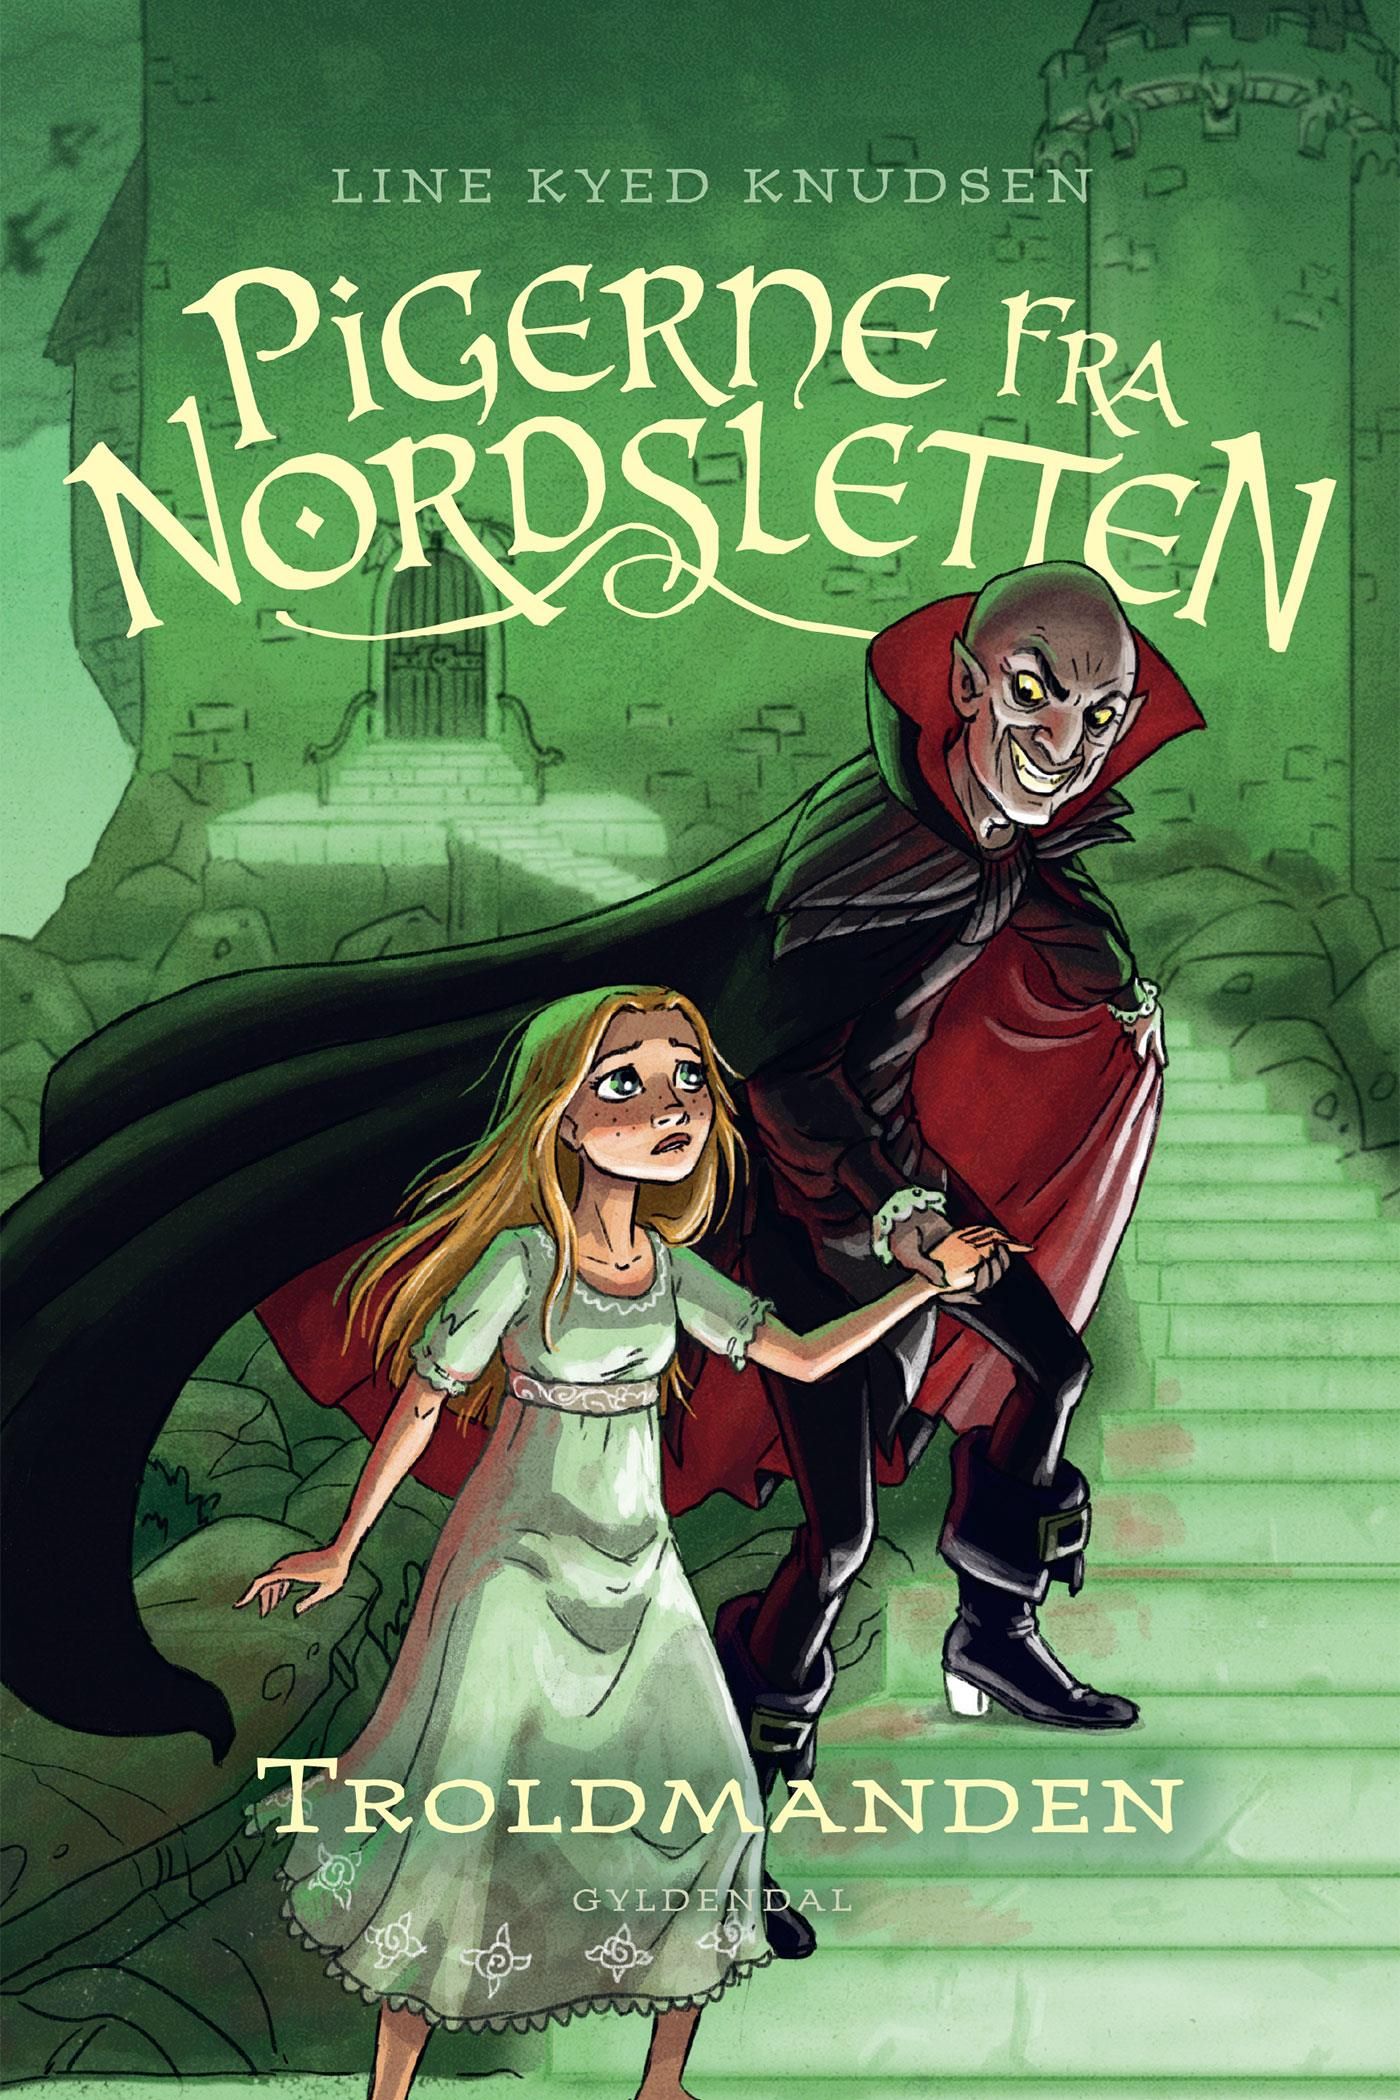 Pigerne fra Nordsletten 3 - Troldmanden, eBook by Line Kyed Knudsen